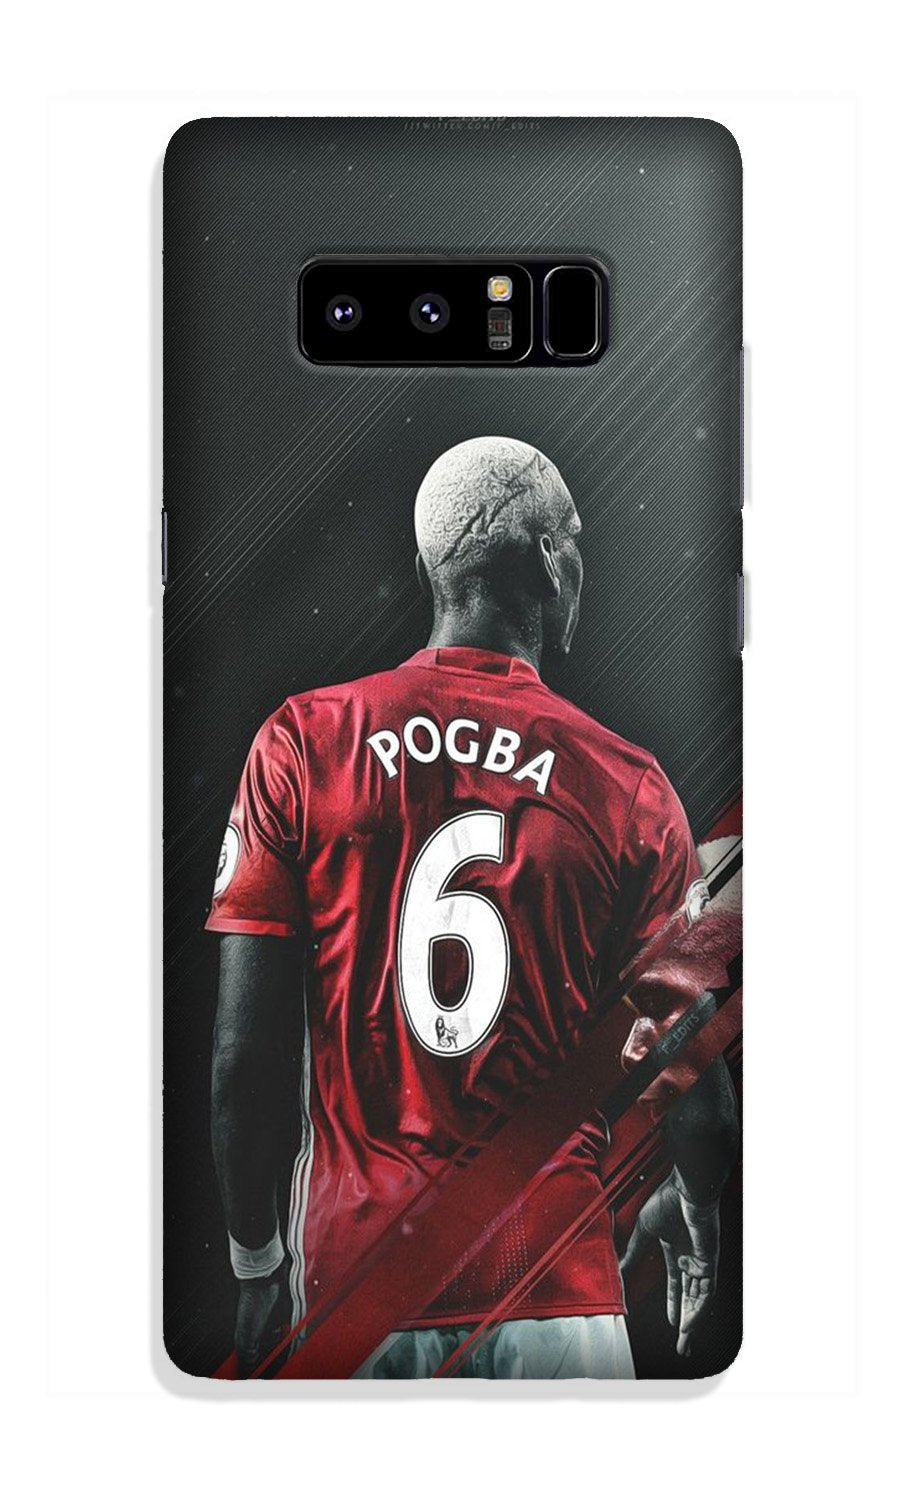 Pogba Case for Galaxy Note 8(Design - 167)